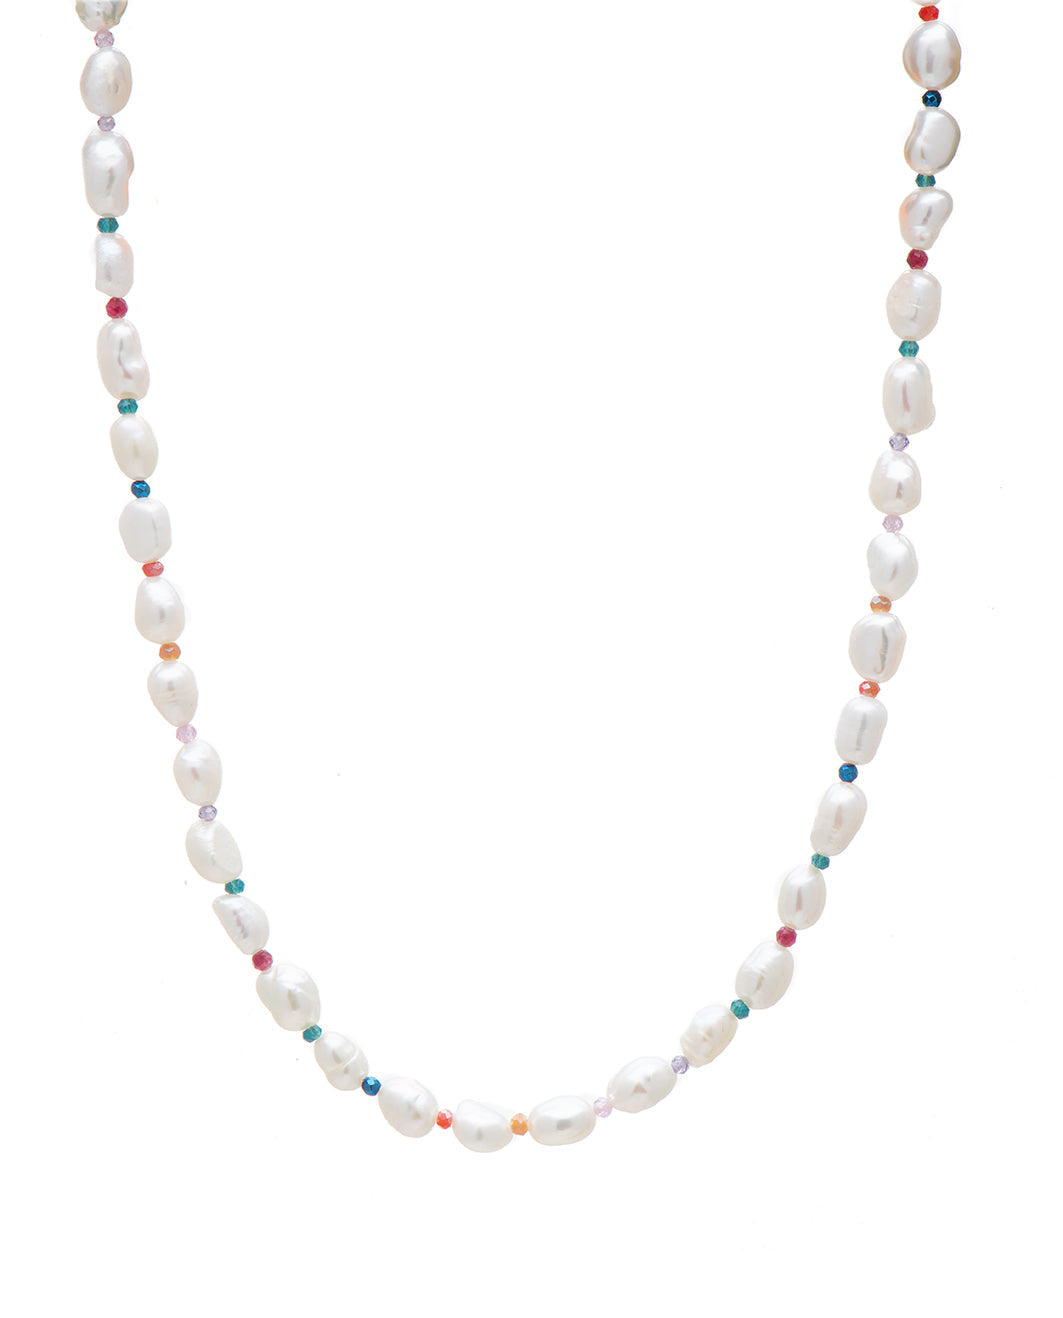 Necklace Zirconed Pearls